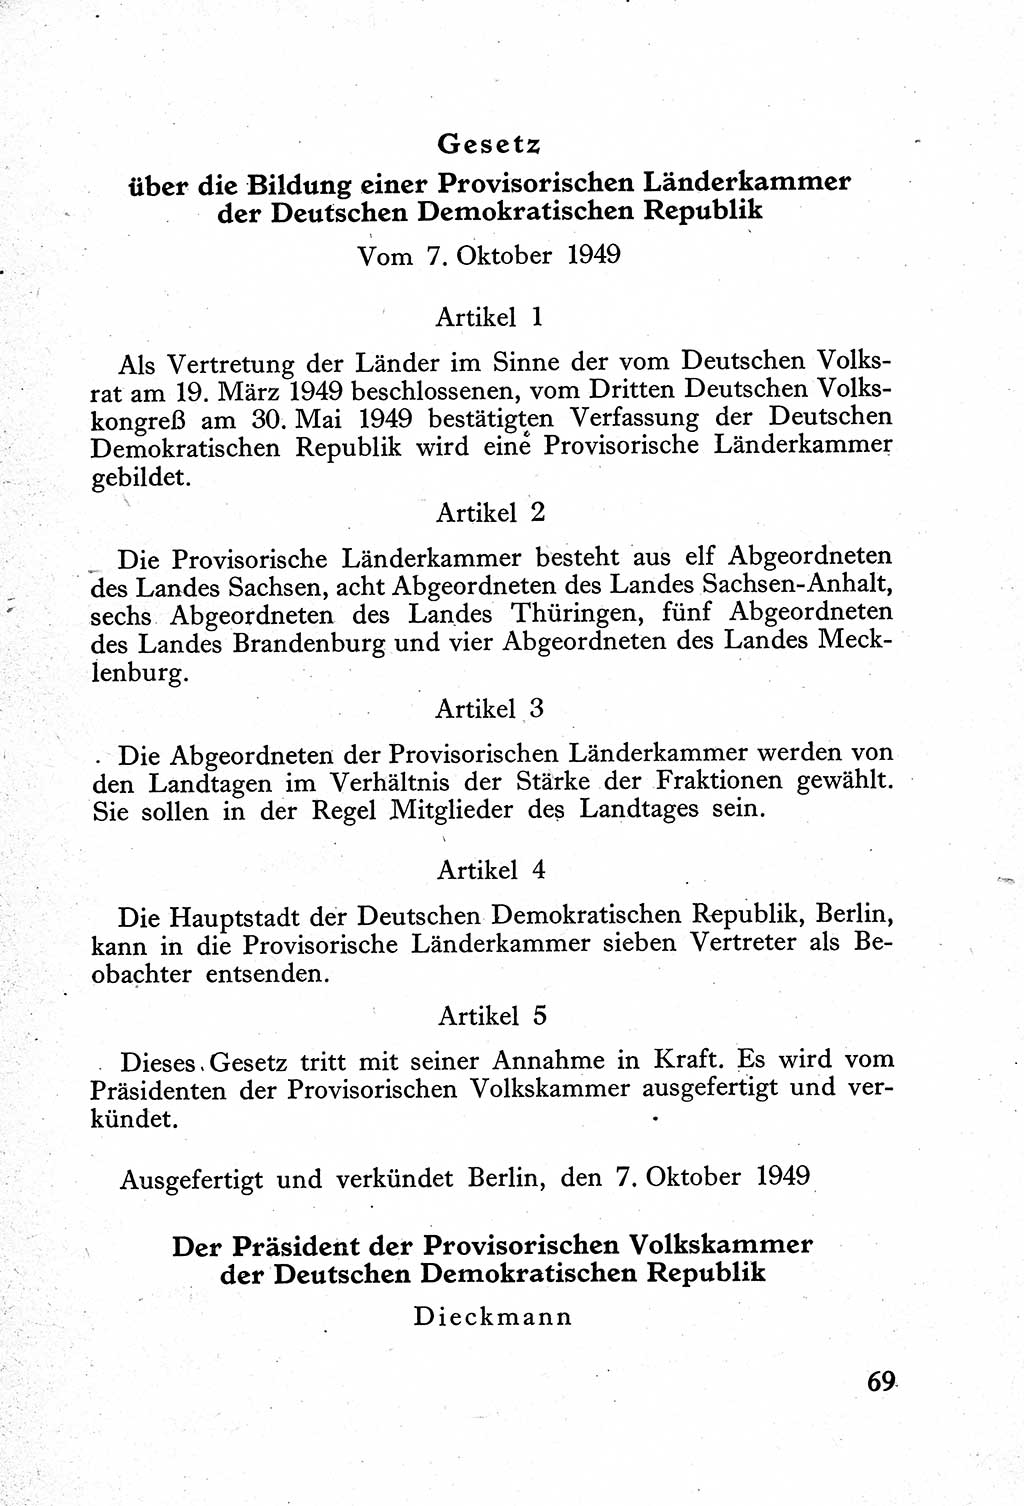 Verfassung der Deutschen Demokratischen Republik (DDR) mit einer Einleitung von Karl Steinhoff 1949, Seite 69 (Verf. DDR Einl. K. S. 1949, S. 69)